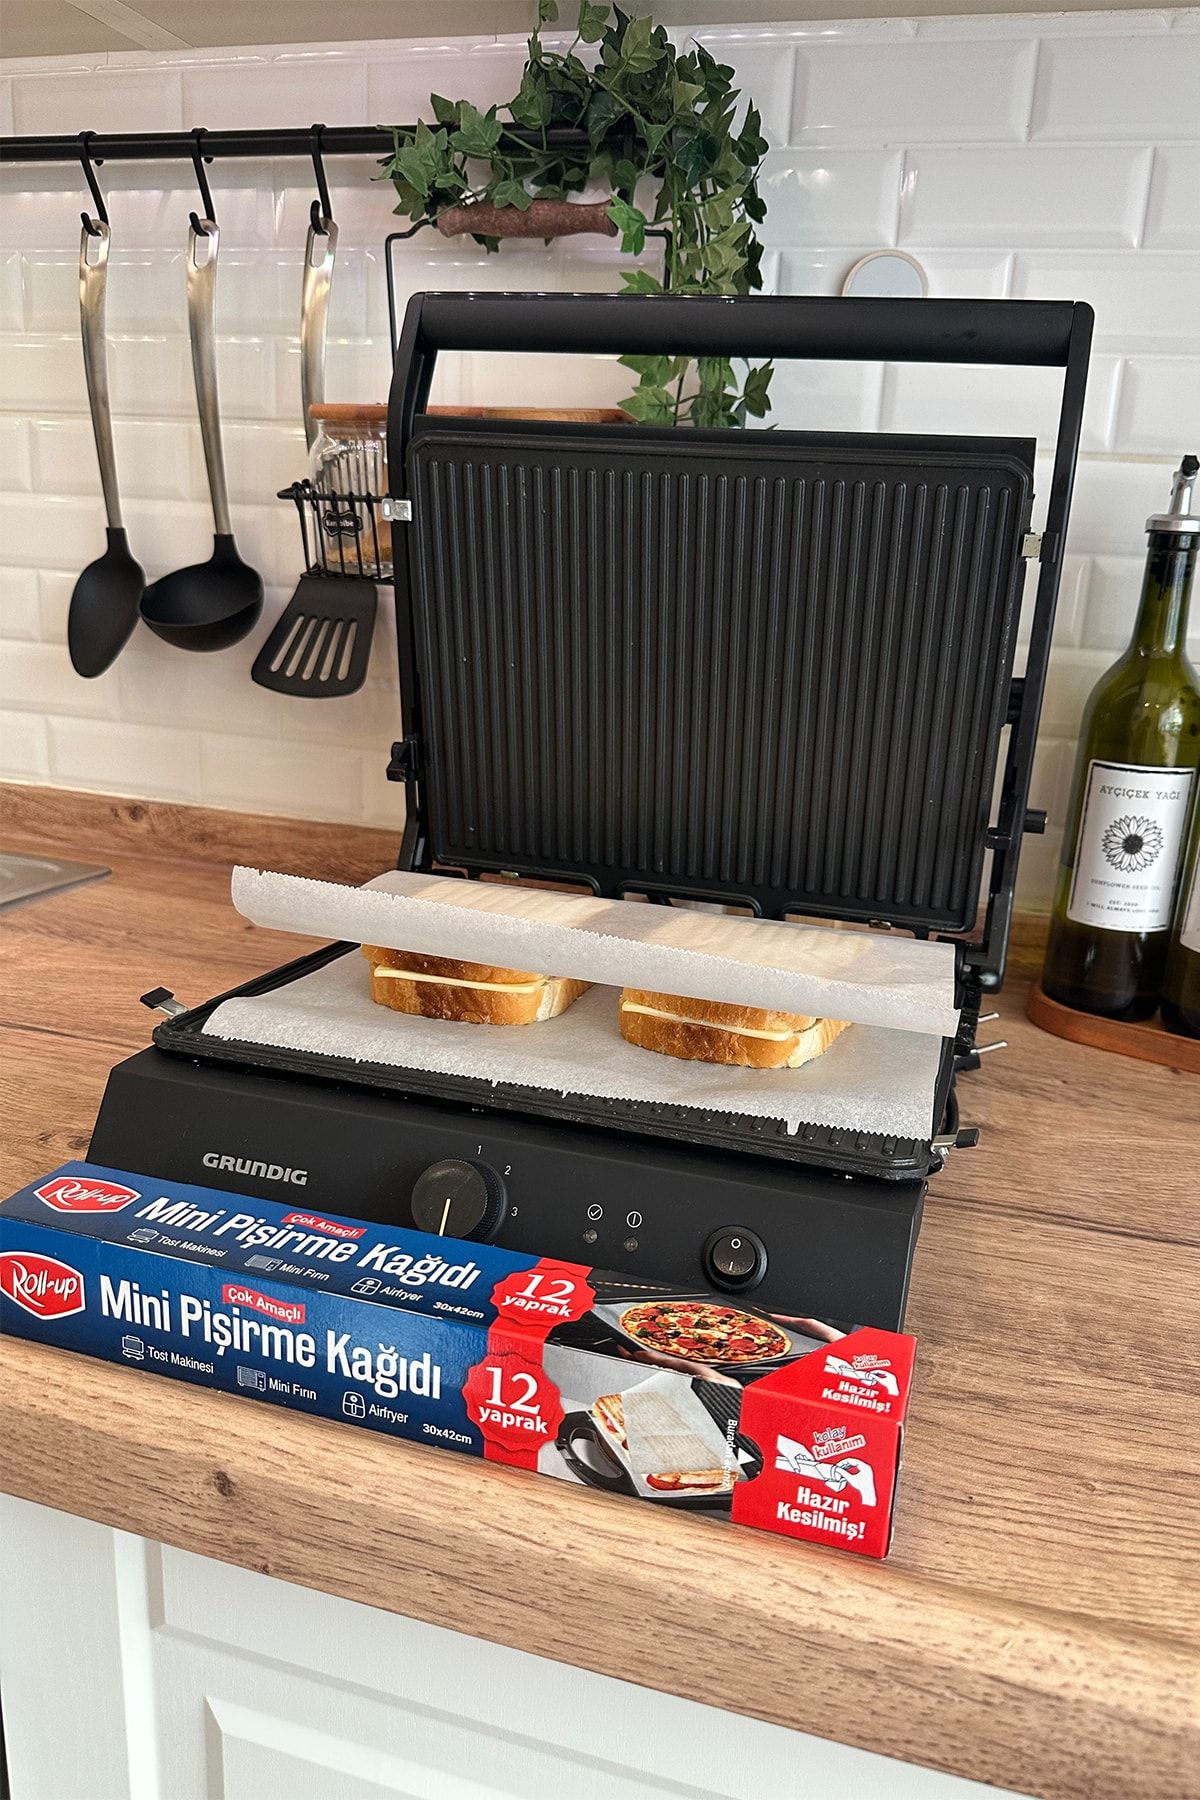 Roll Up Kesilmiş Mini Pişirme Kağıdı Airfryer - Tost Makinesi - Mini Fırın uyumlu 12 Yaprak x 4 Kutu